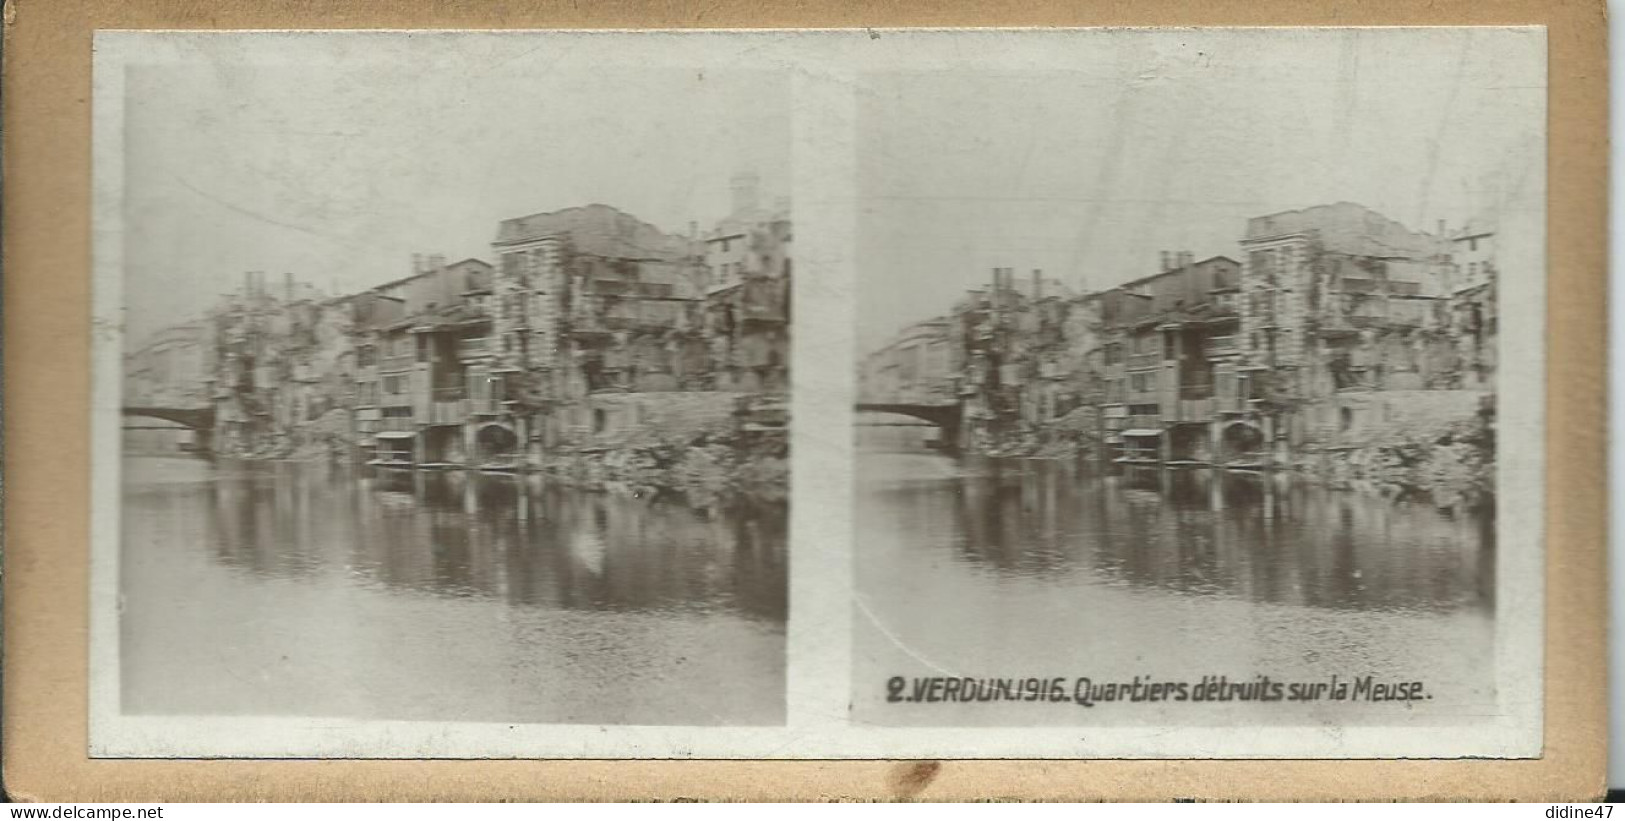 PHOTOS STÉRÉOSCOPIQUES - VERDUN - 1916 Quartier Détruit Sur La Meuse - Stereo-Photographie